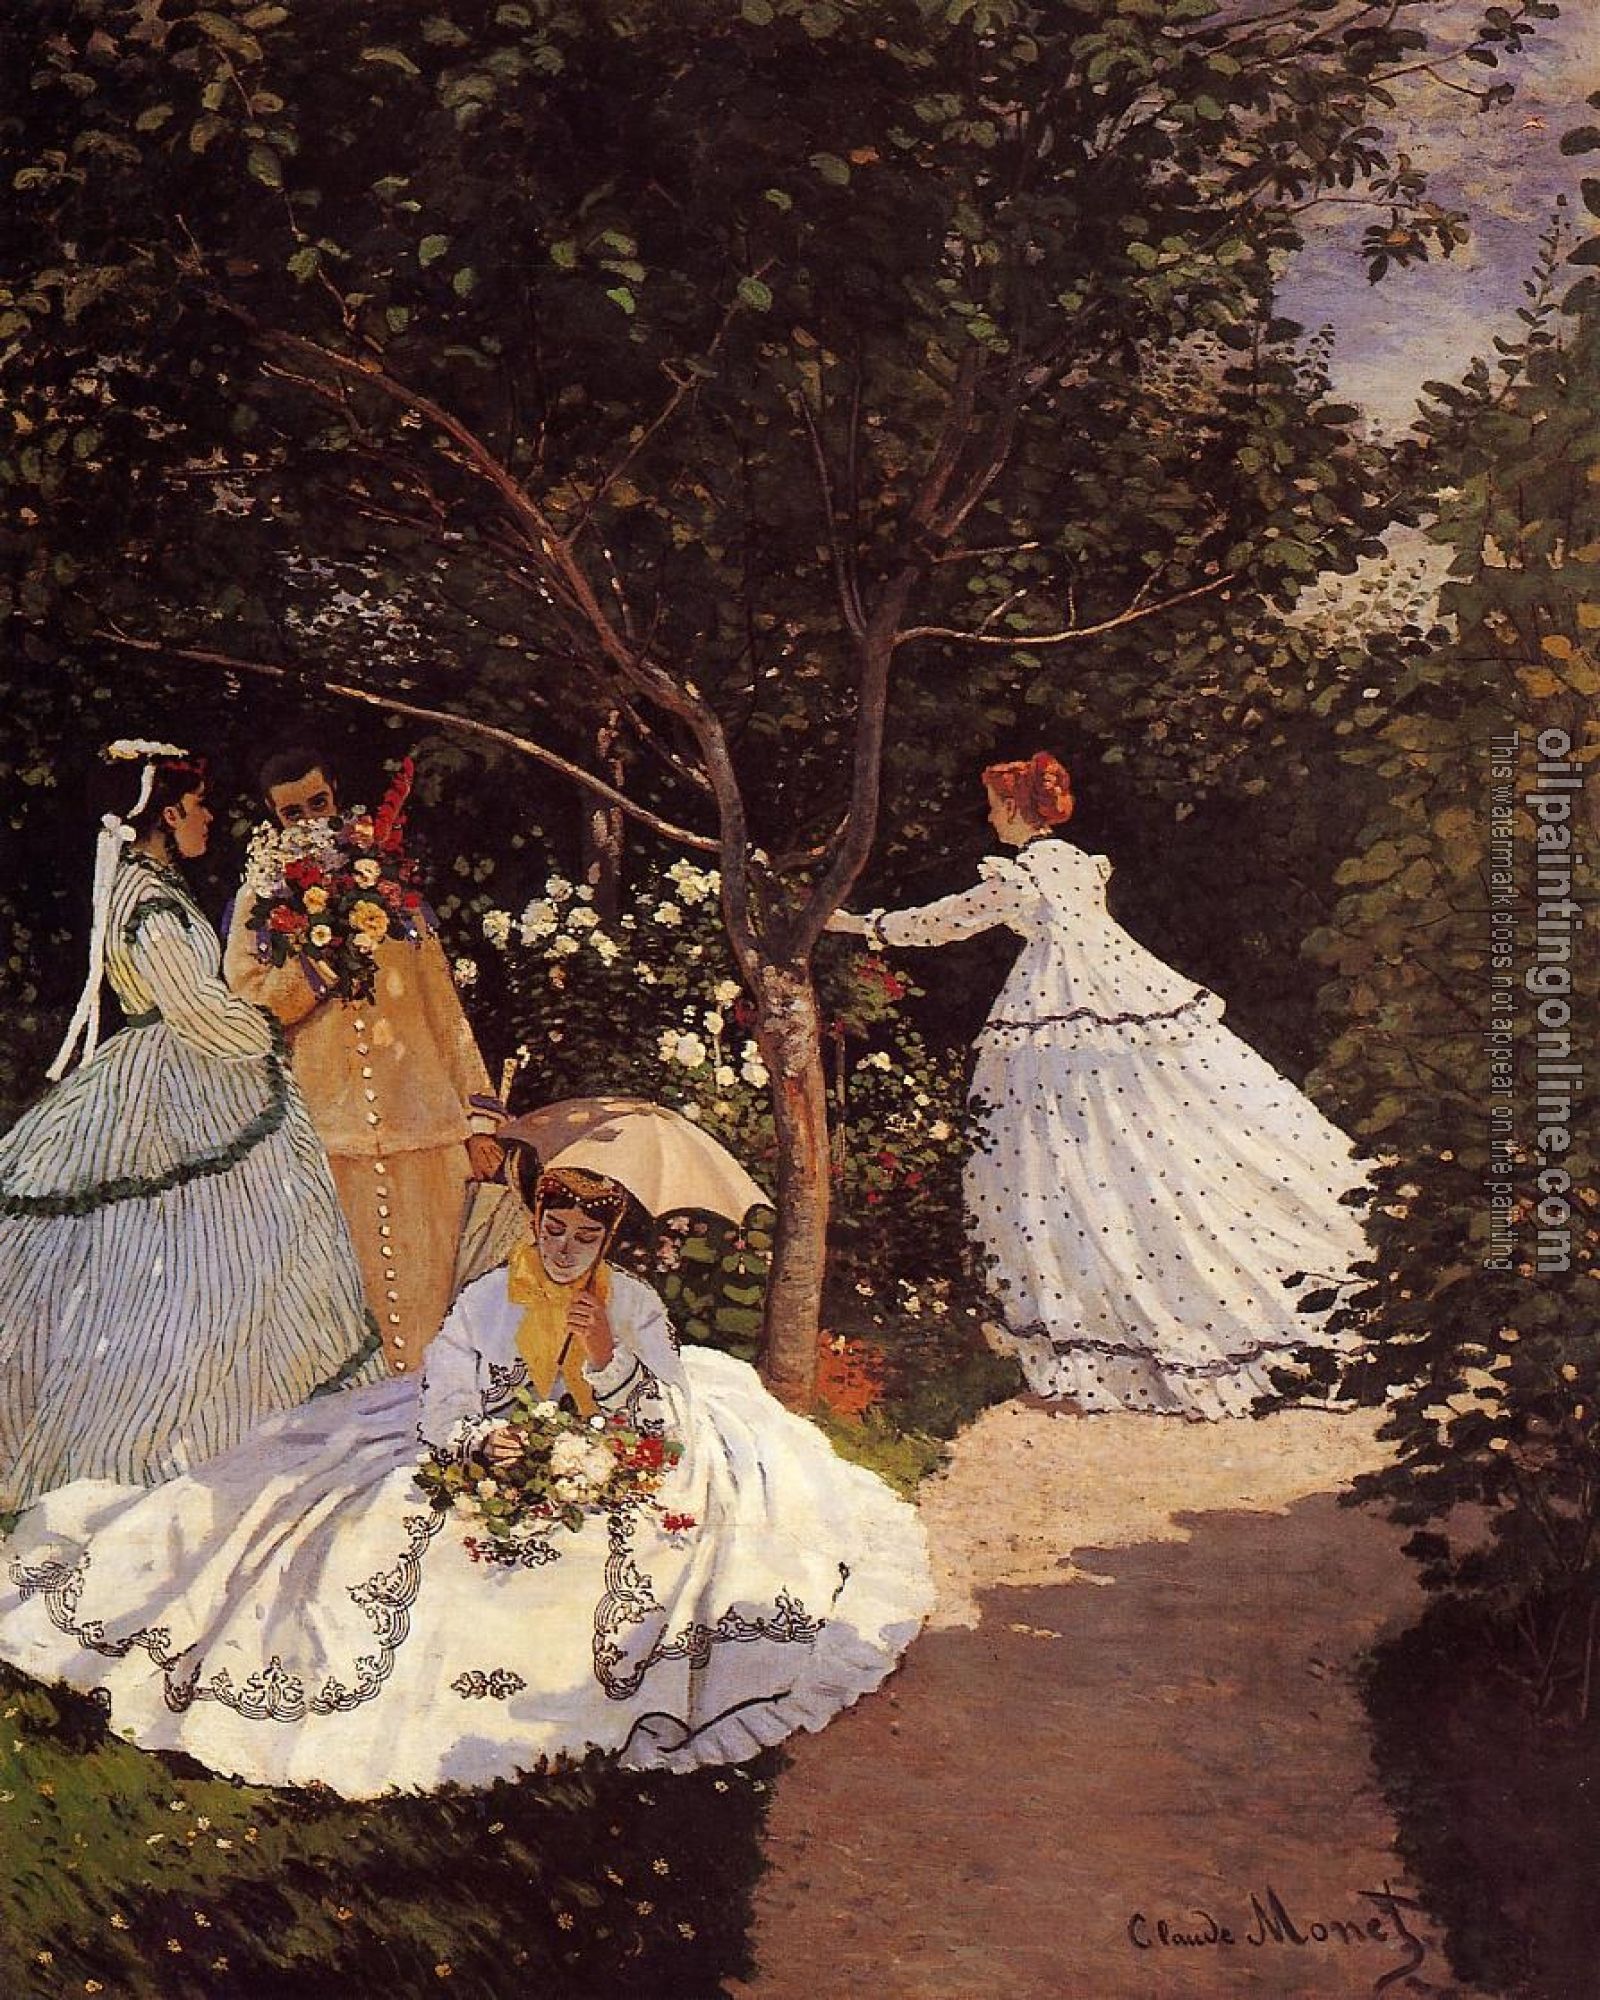 Monet, Claude Oscar - Women in the Garden